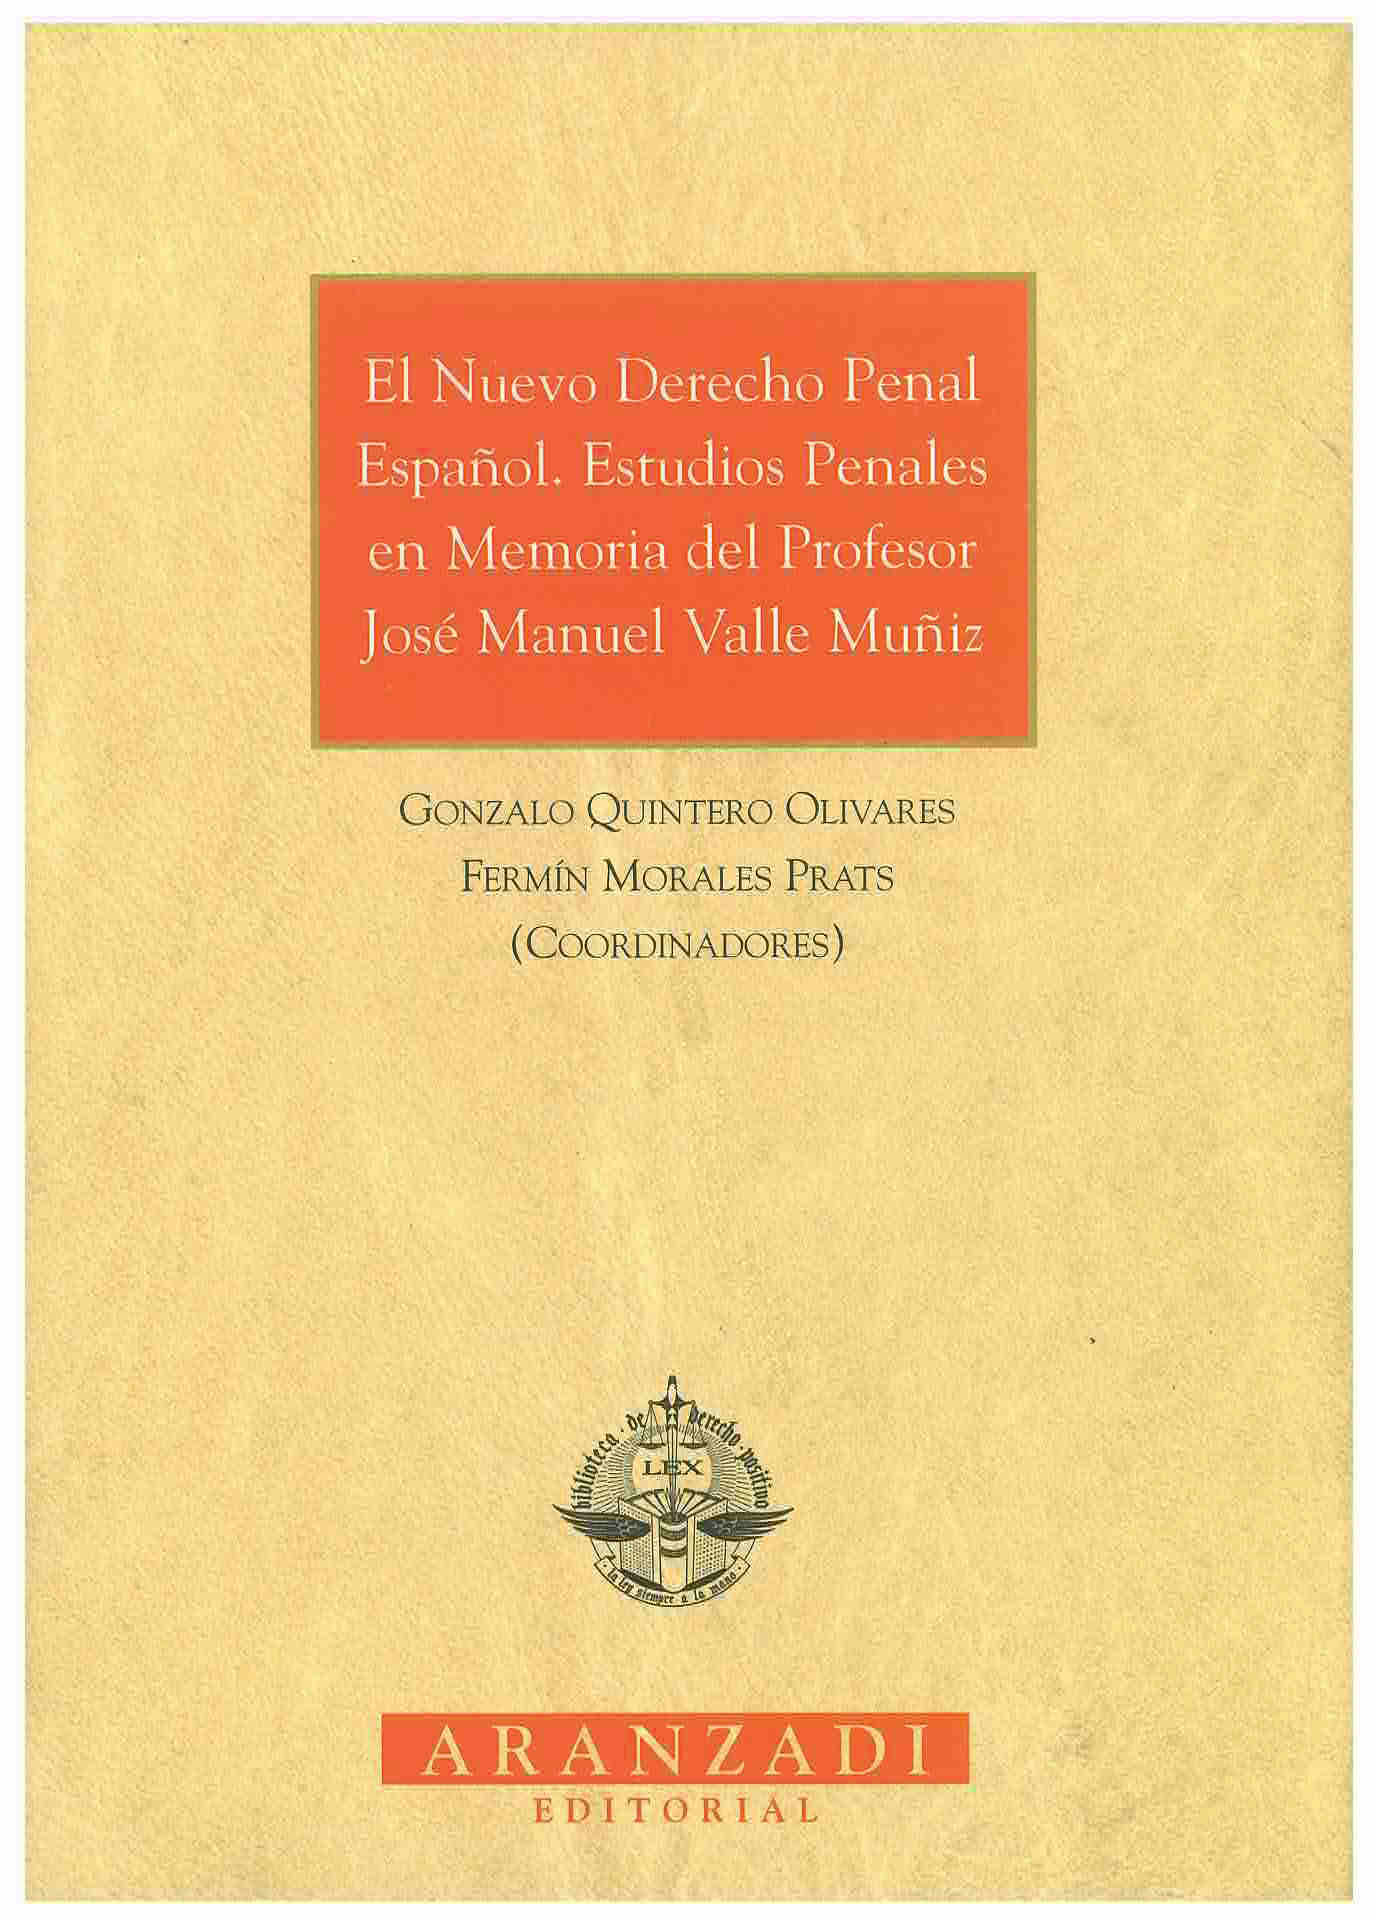 El nuevo derecho penal español : estudios penales en memoria del profesor José Manuel Valle Muñiz